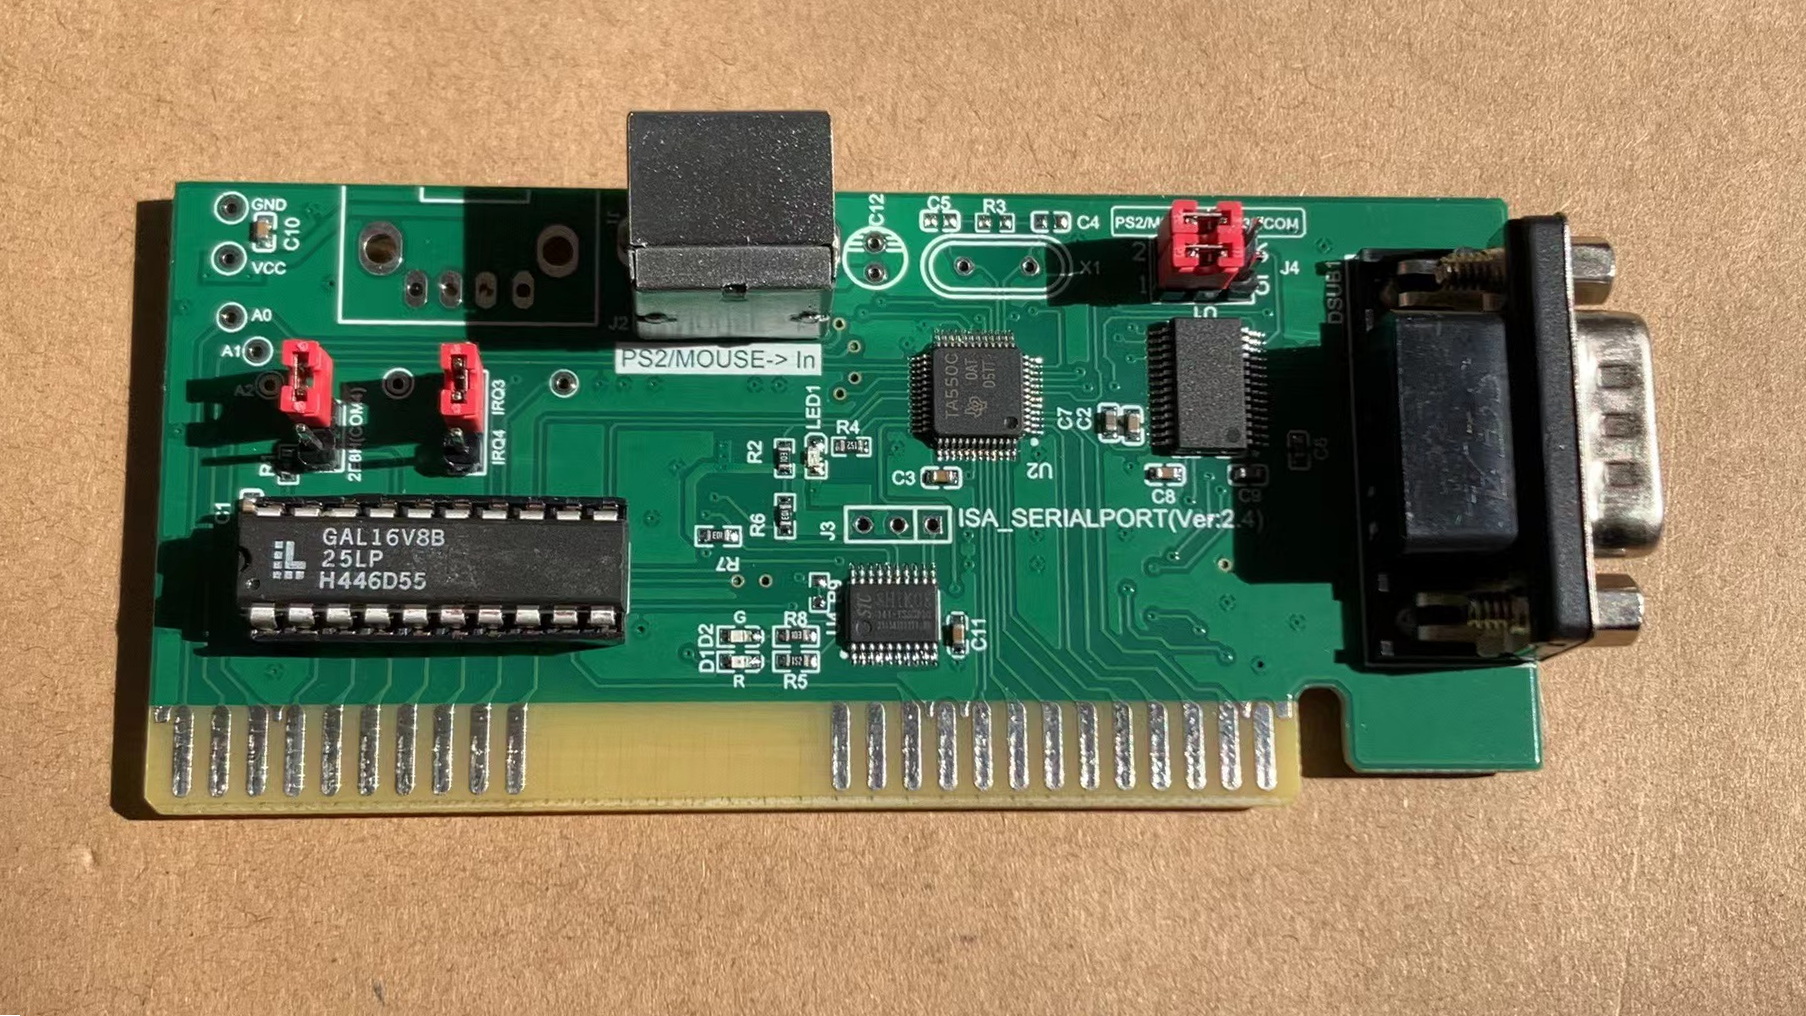 ISA总线扩展卡 串口扩展卡 PS2鼠标接口 光电鼠标DOS接口 8位总线 电子元器件市场 板卡配件 原图主图